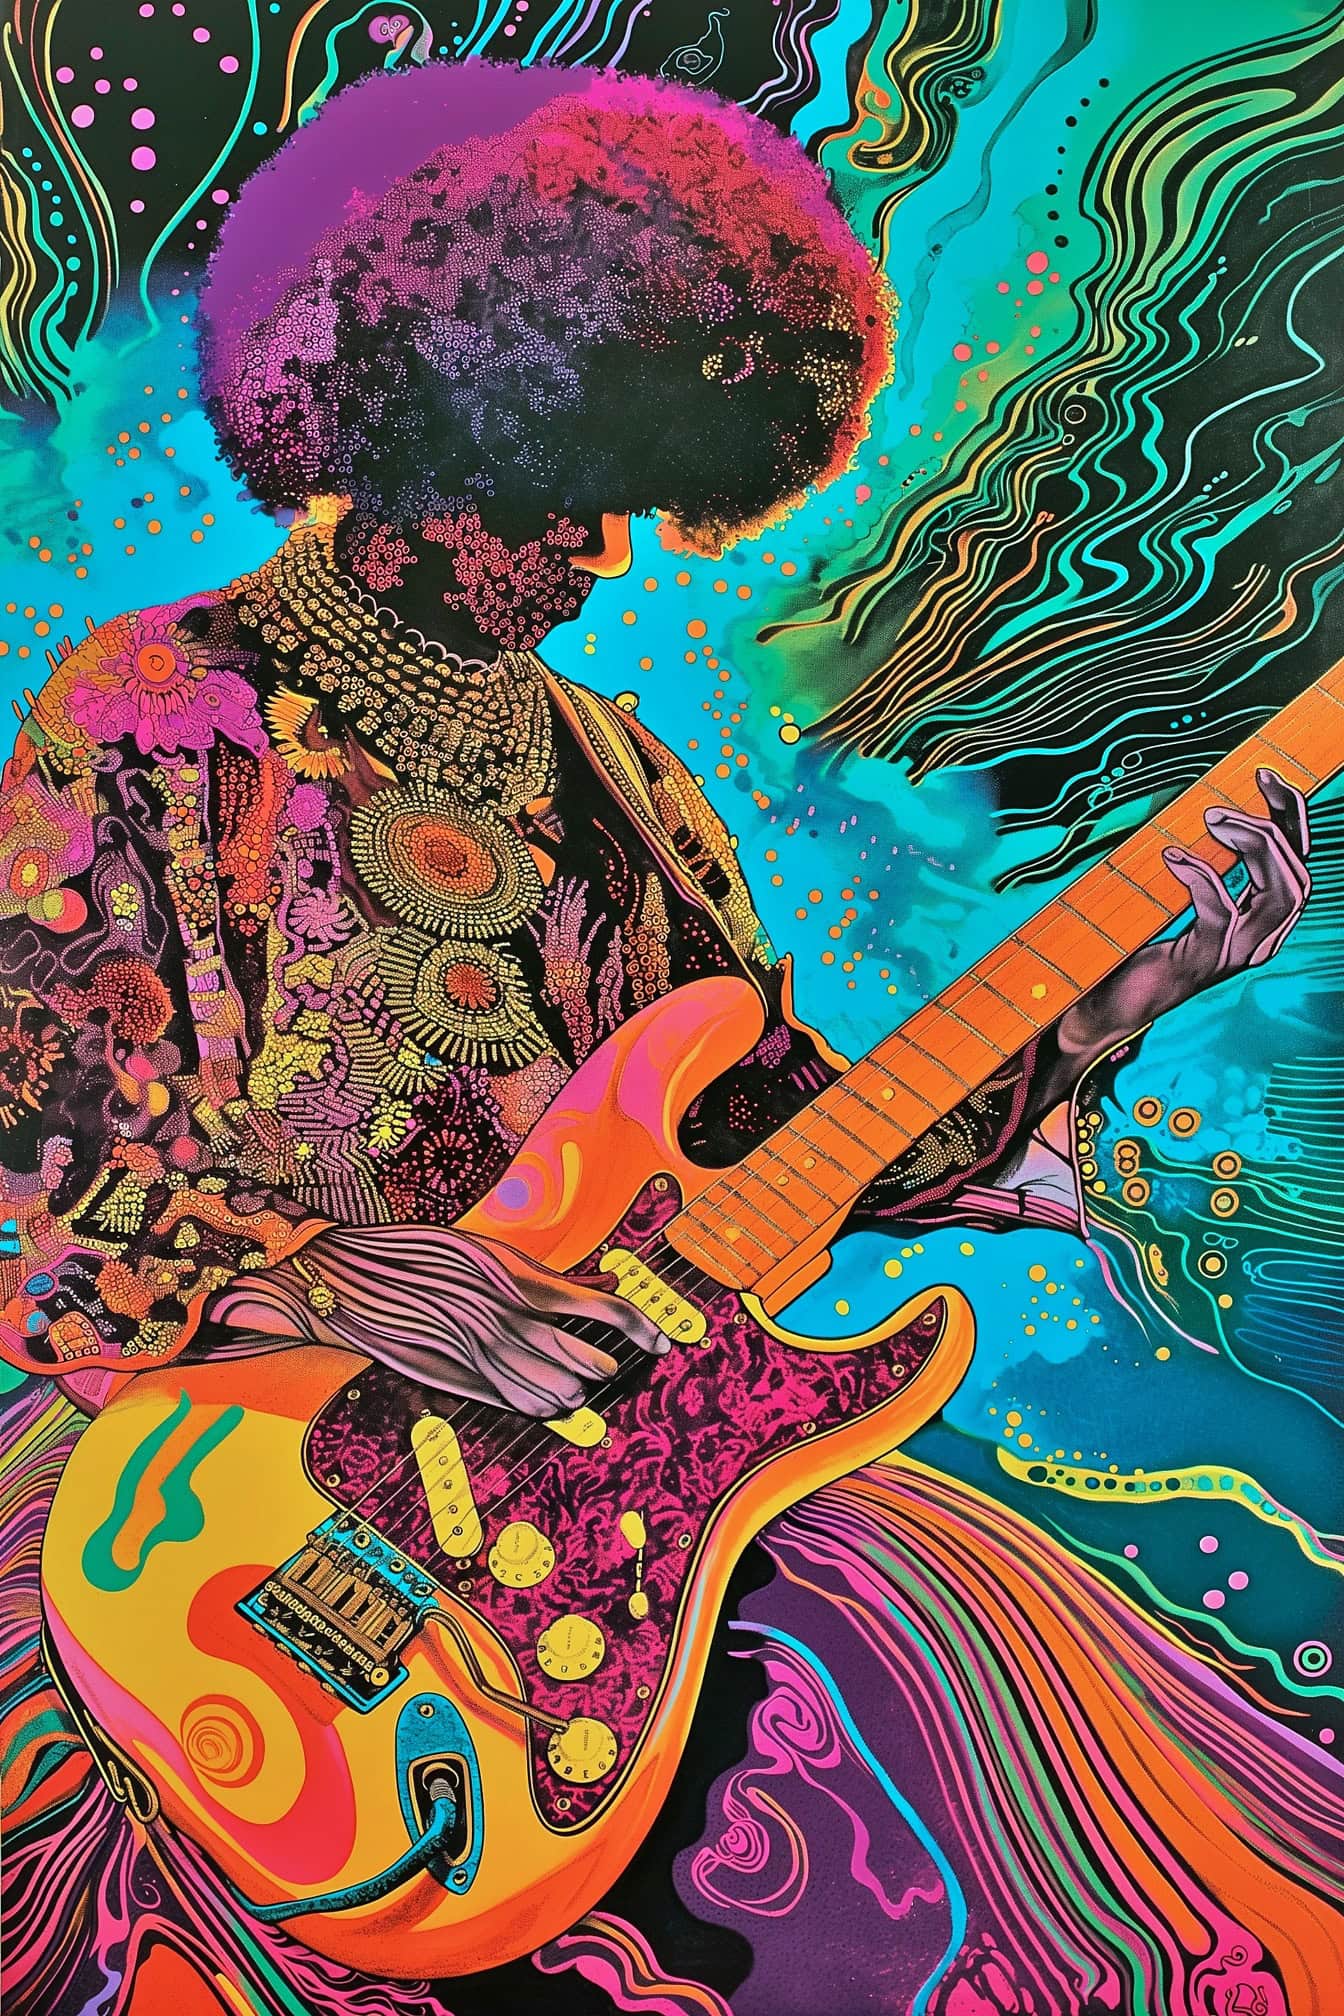 Hypnotická ilustrace Jimiho Hendrixe hrajícího na kytaru v mixu psychedelického a pop-artového stylu